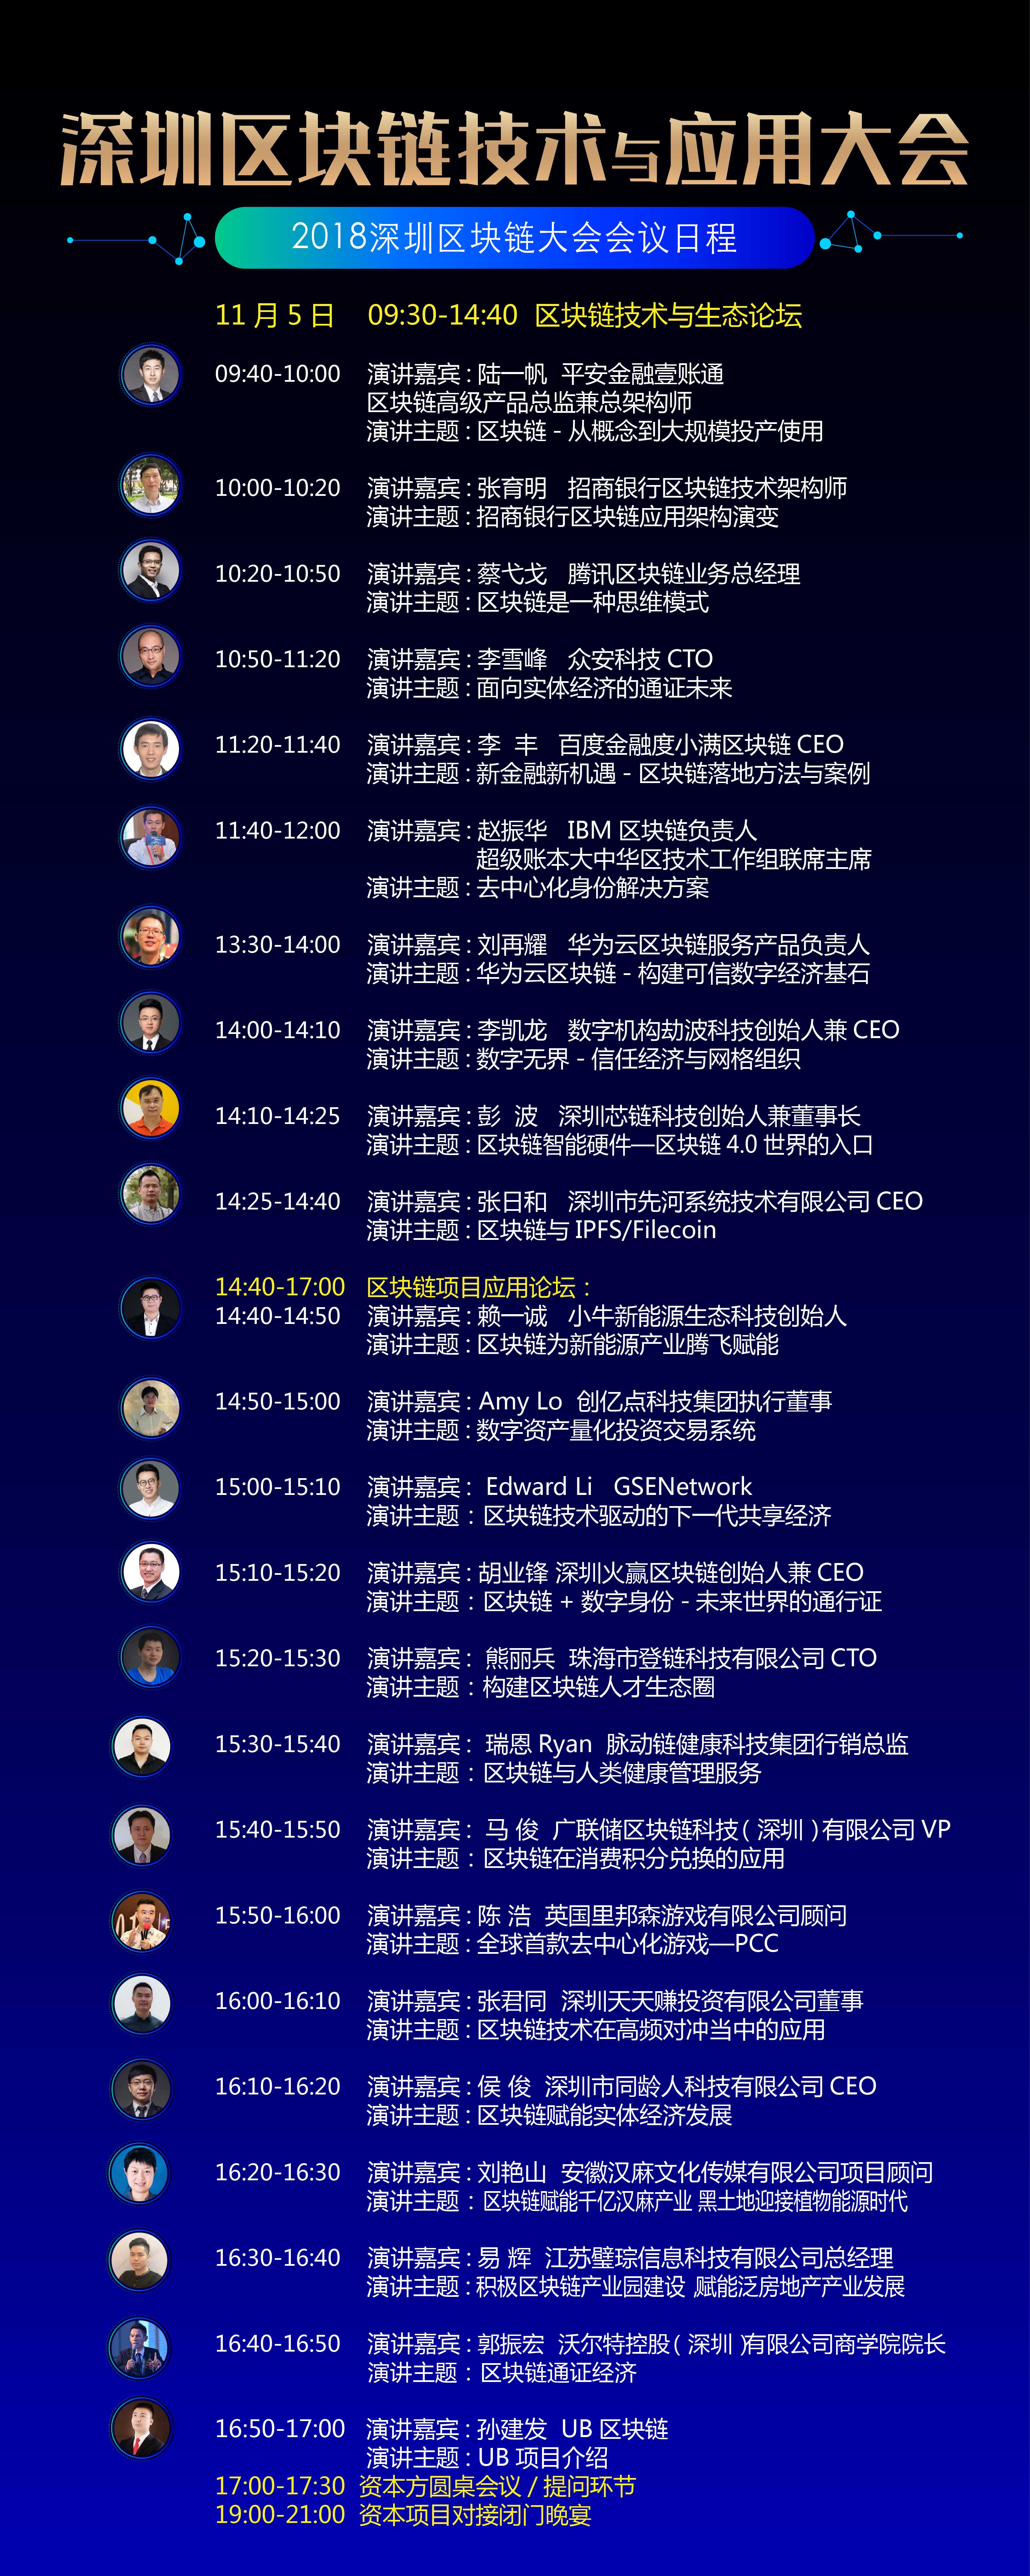 2018深圳国际区块链应用大会